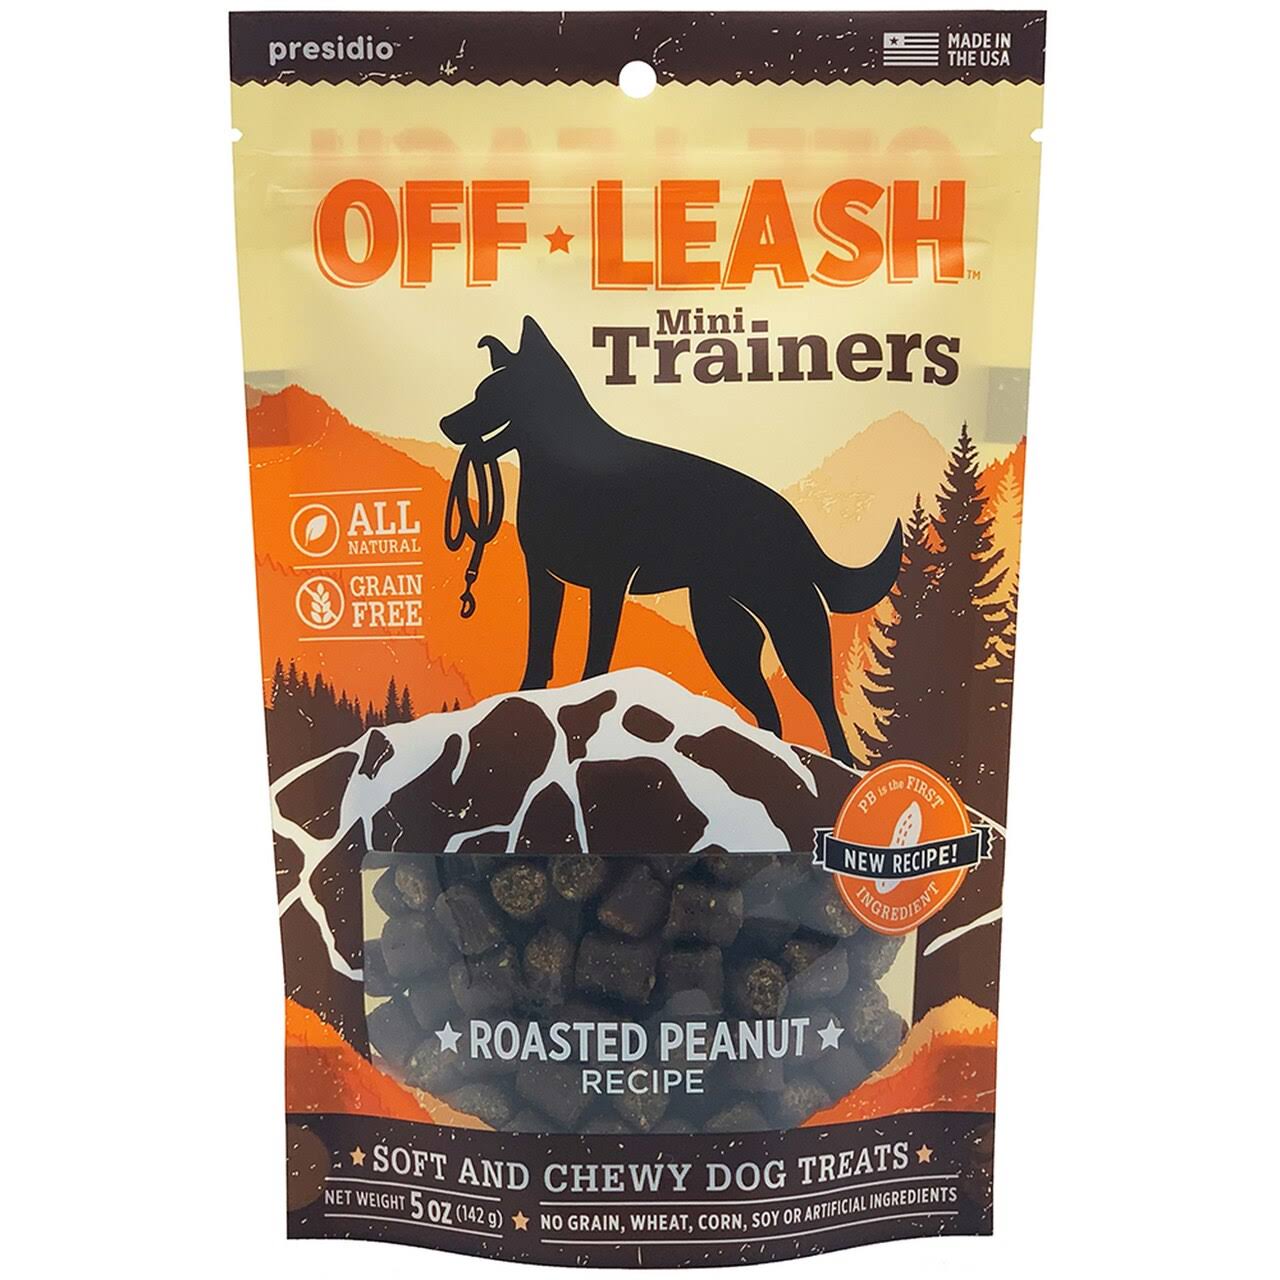 Off-Leash Mini Trainers Dog Treats - Roasted Peanut Recipe, 142g